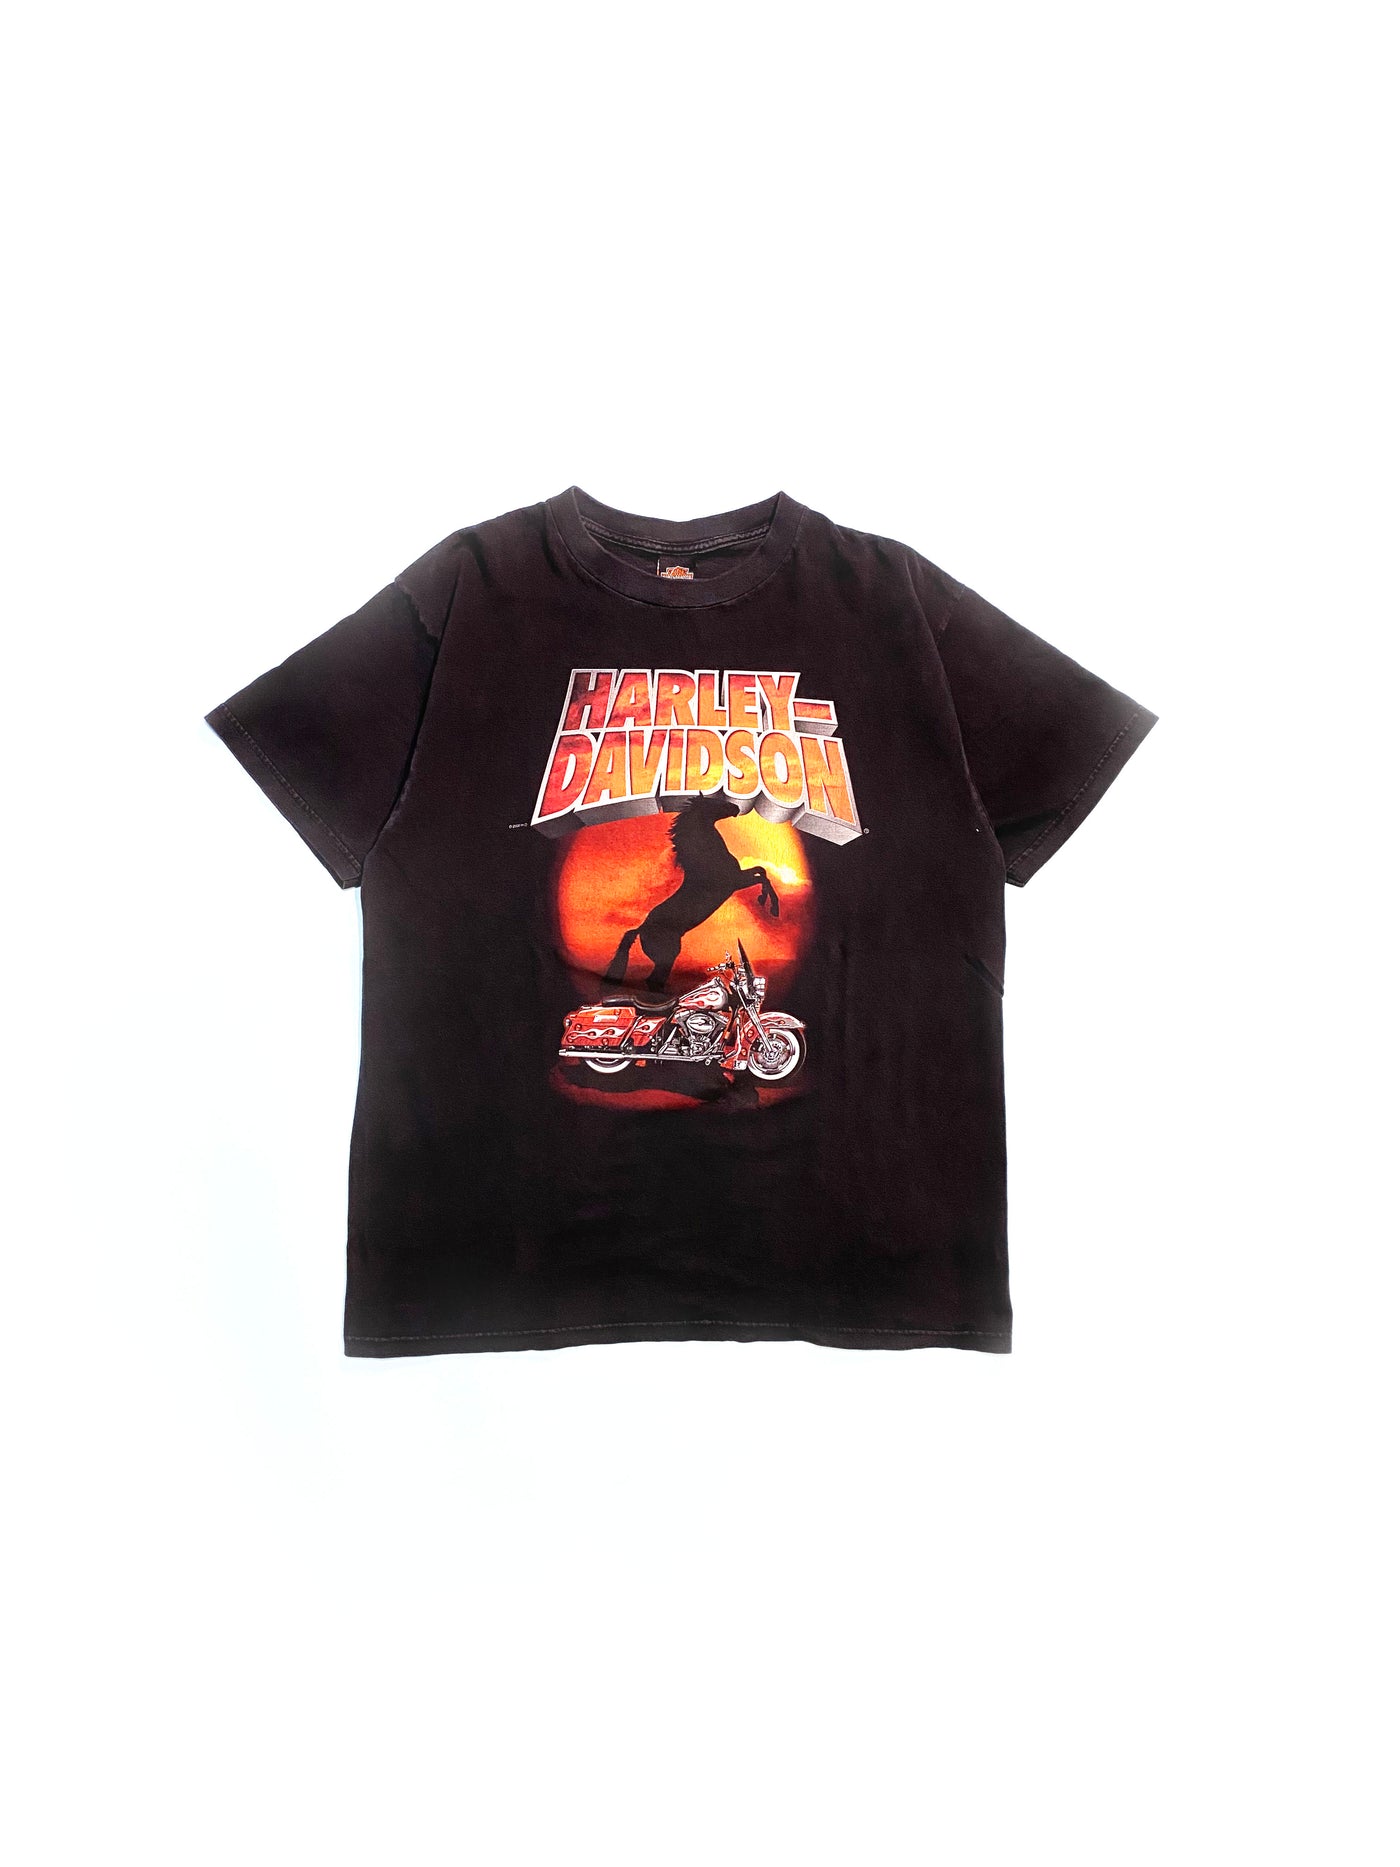 Vintage 2000 Harley El Paso, TX T-Shirt